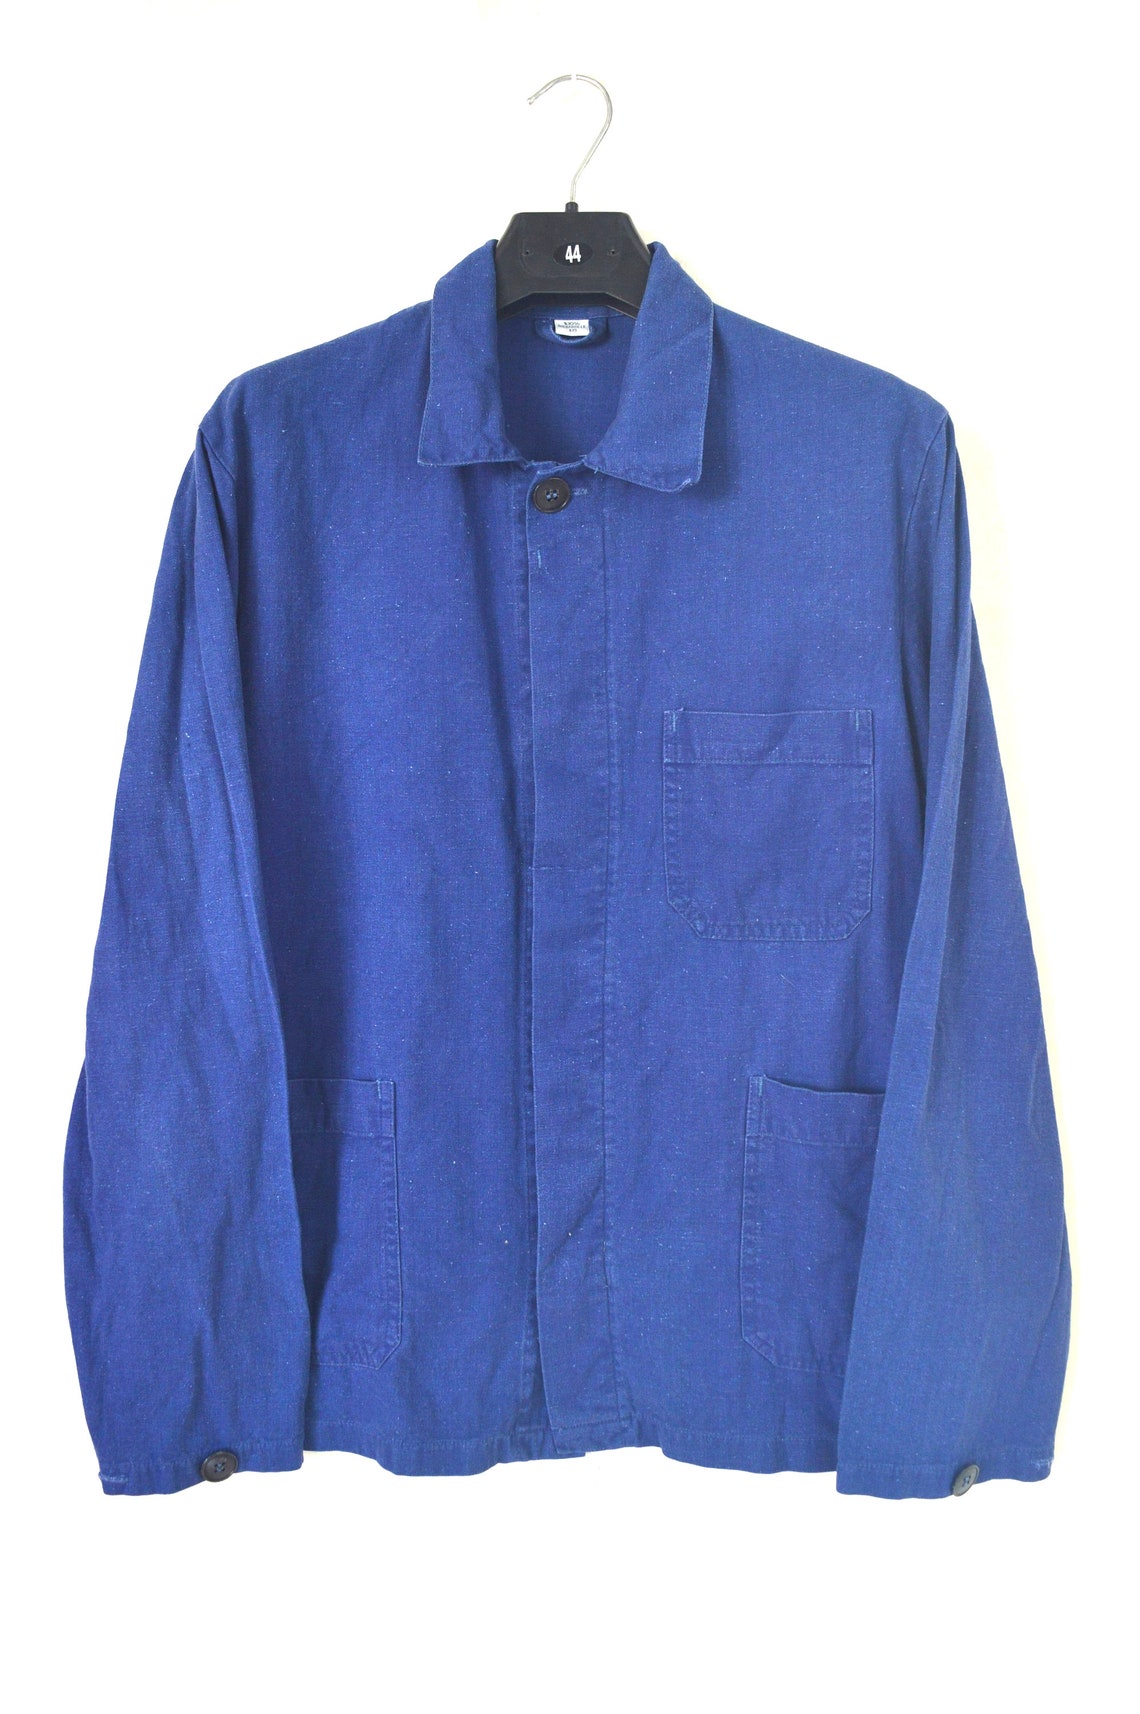 Vintage French Moleskin Workwear Sanfor Chore Jacket Size | Etsy